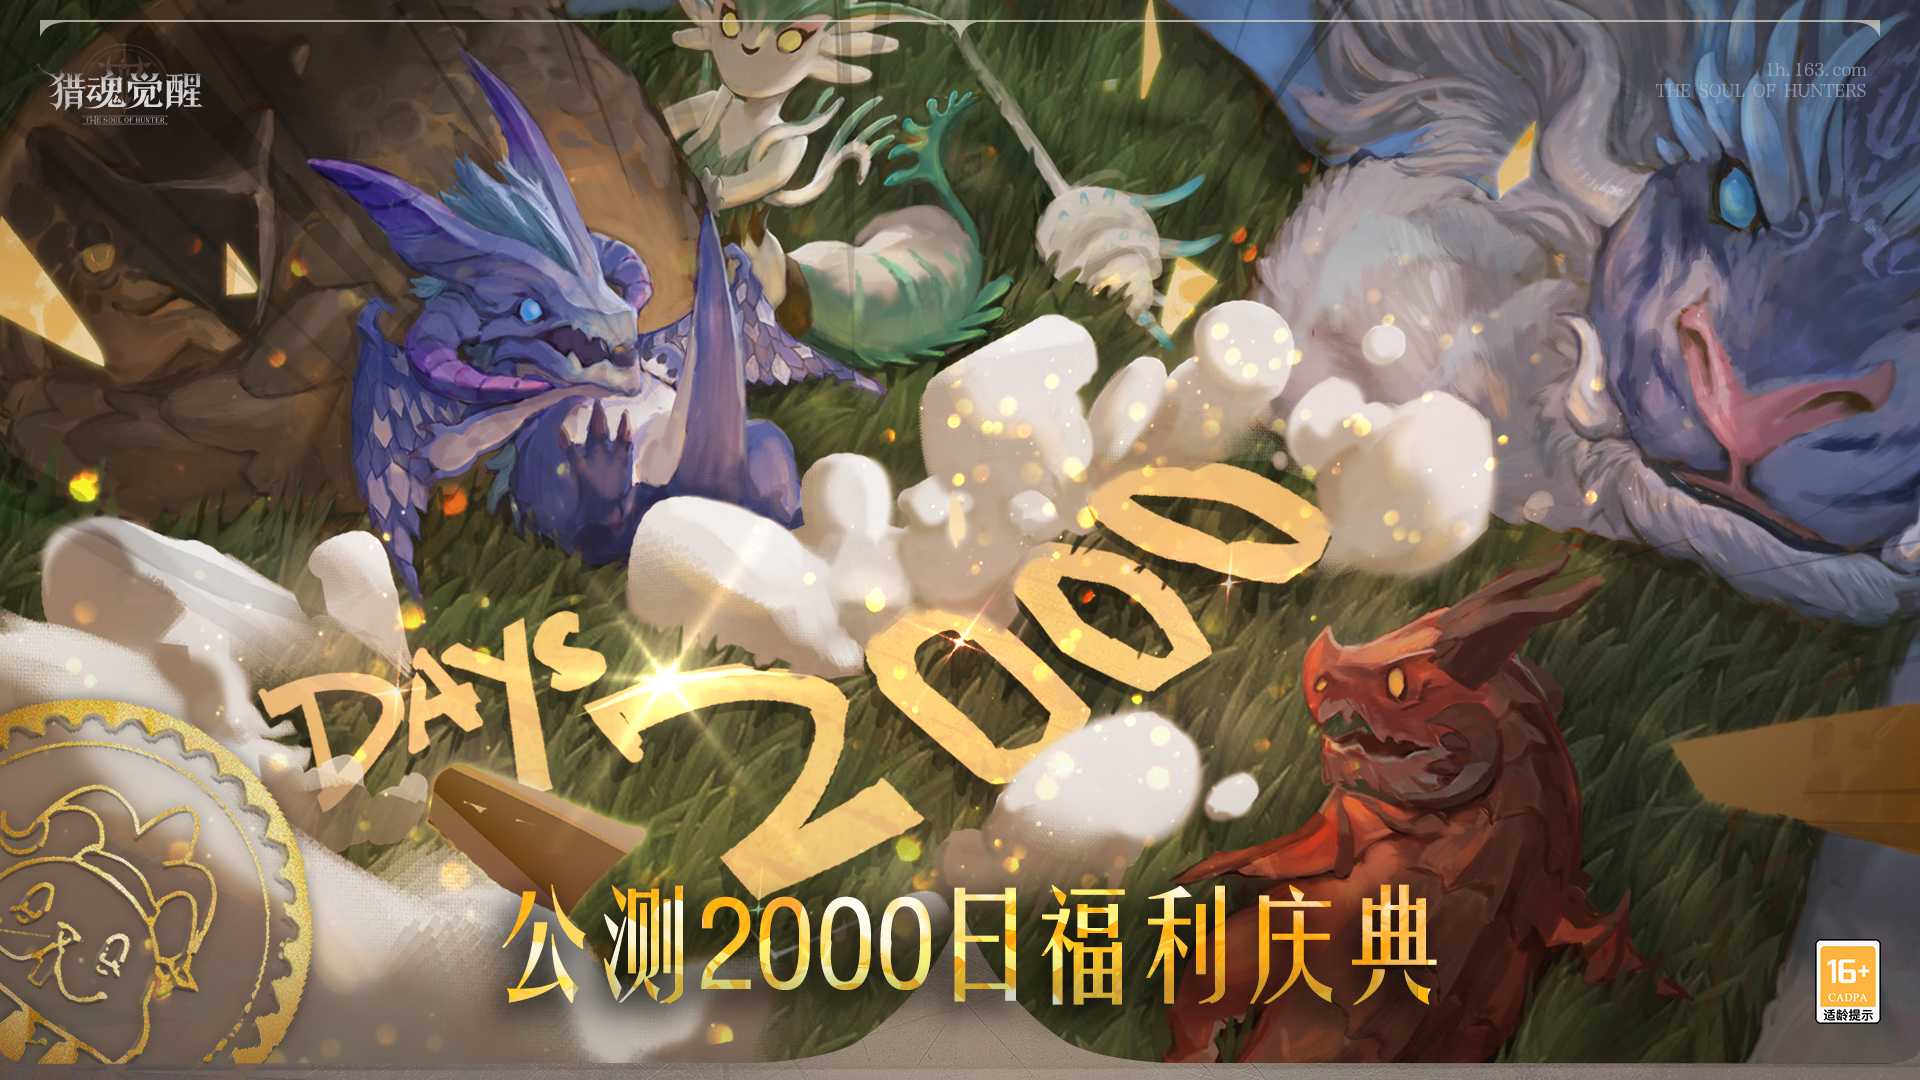 2000日福利庆典热爱回馈 《猎魂觉醒》“魔术之舞”福利汇总(工会福利2000元)